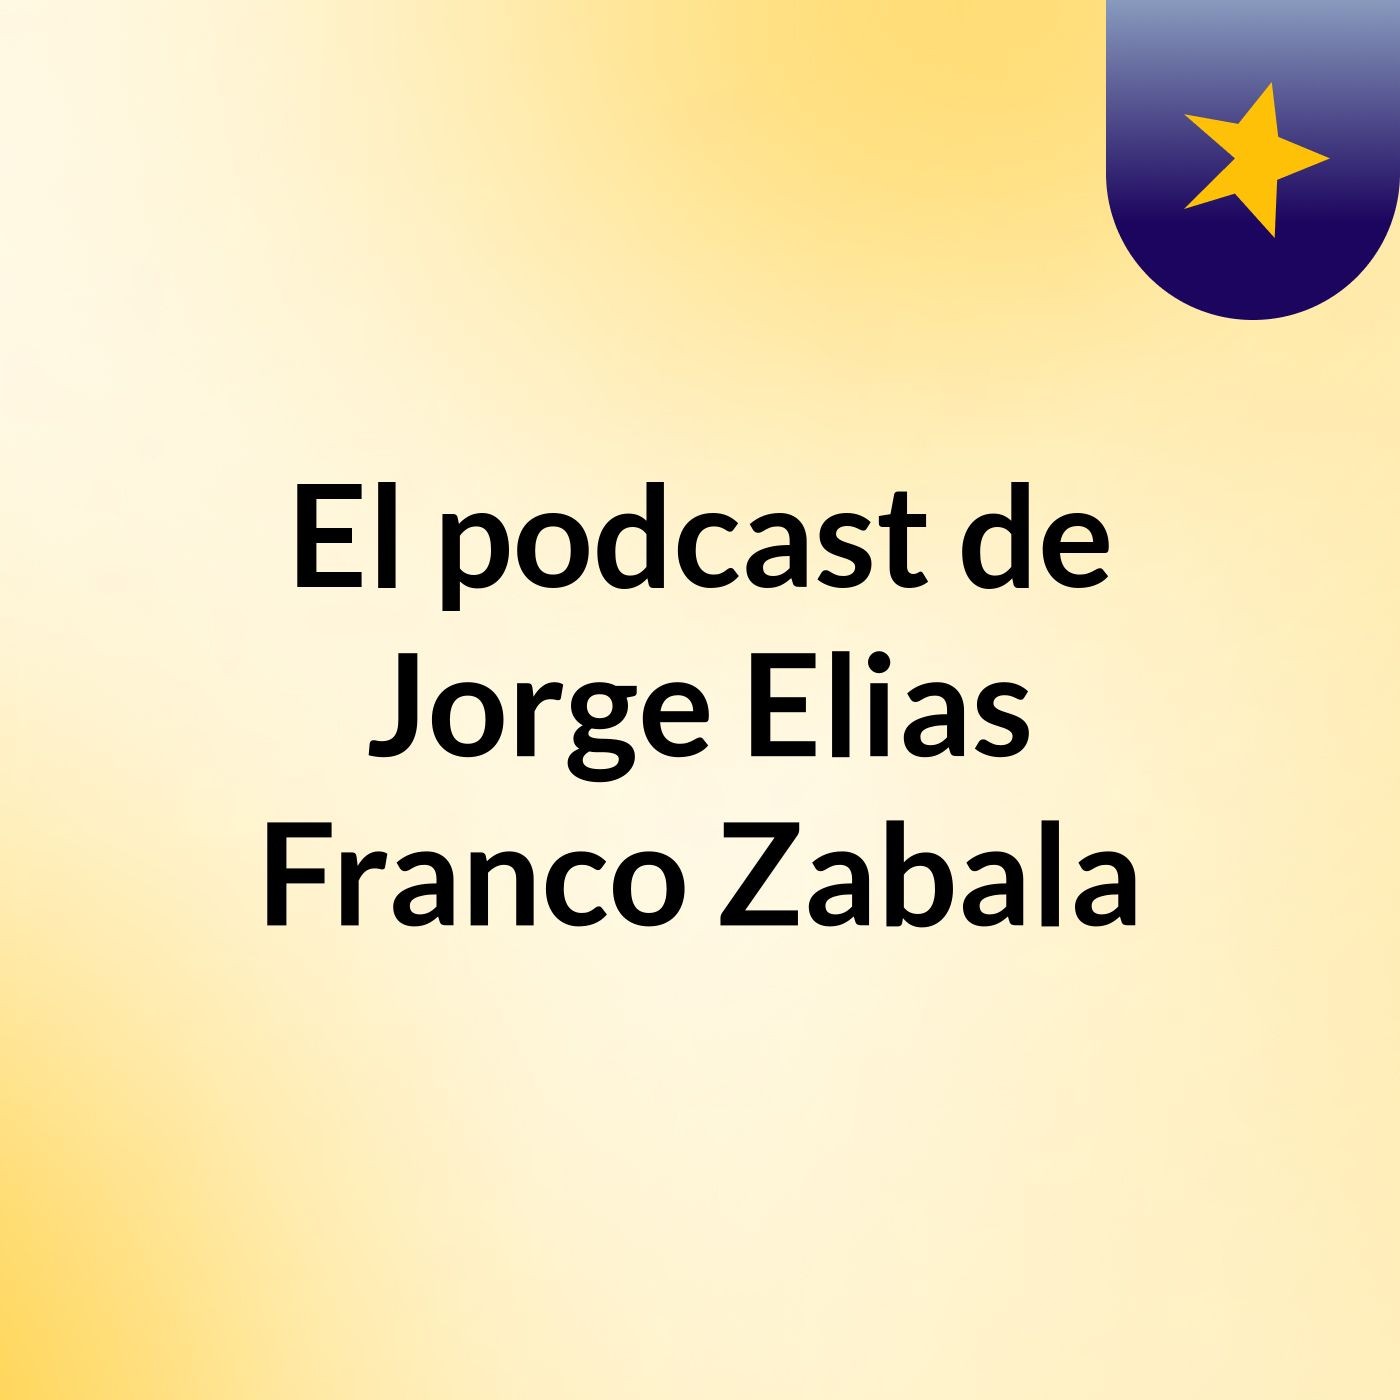 El podcast de Jorge Elias Franco Zabala